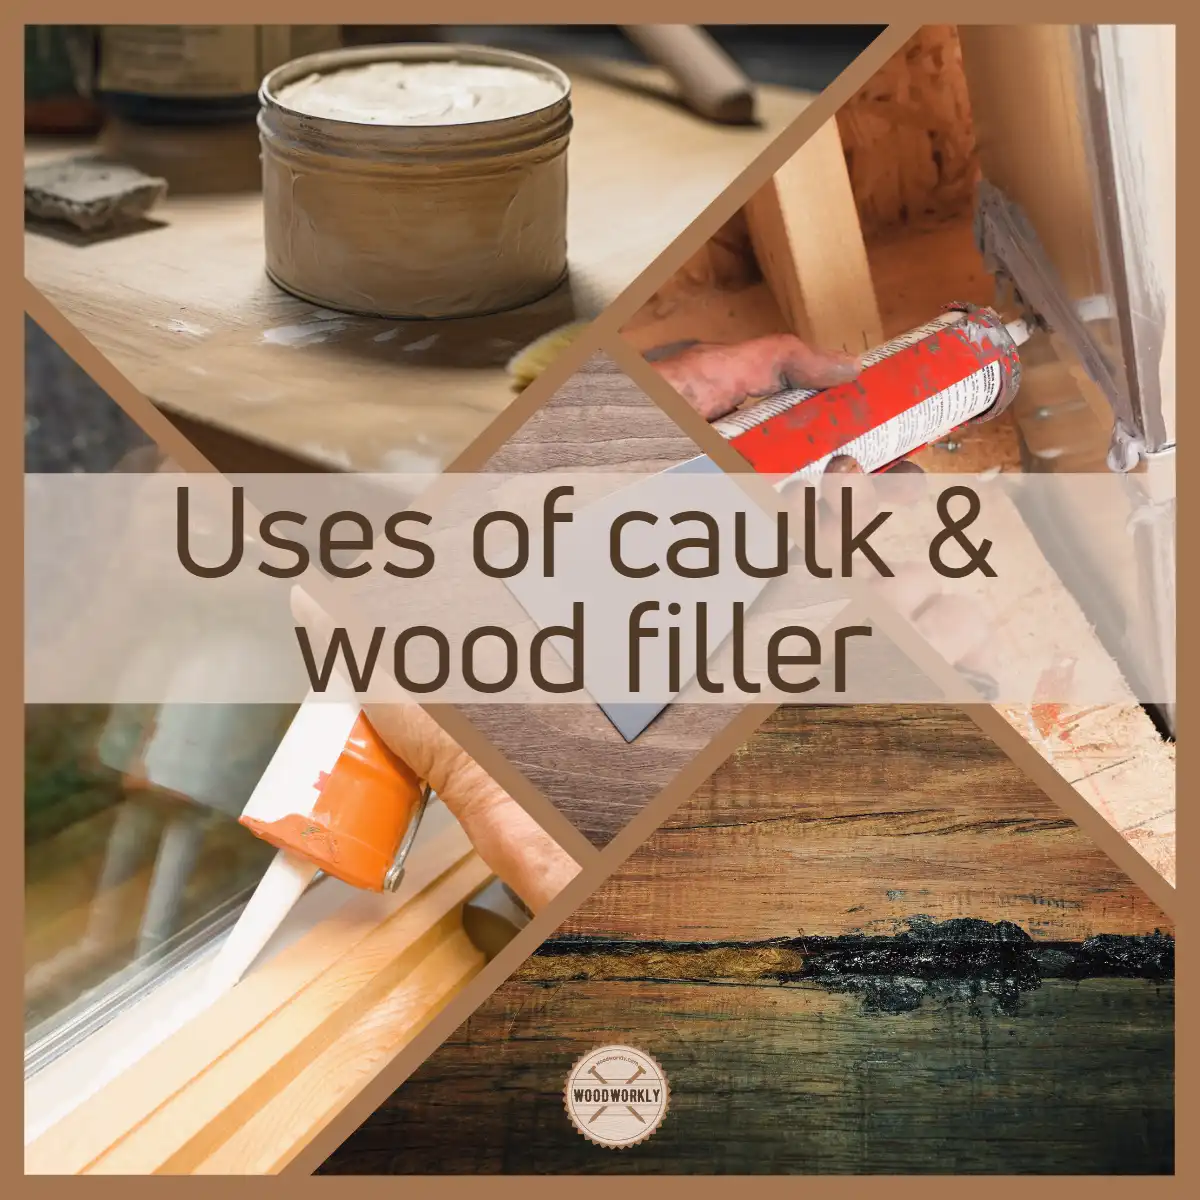 Uses of caulk & wood filler